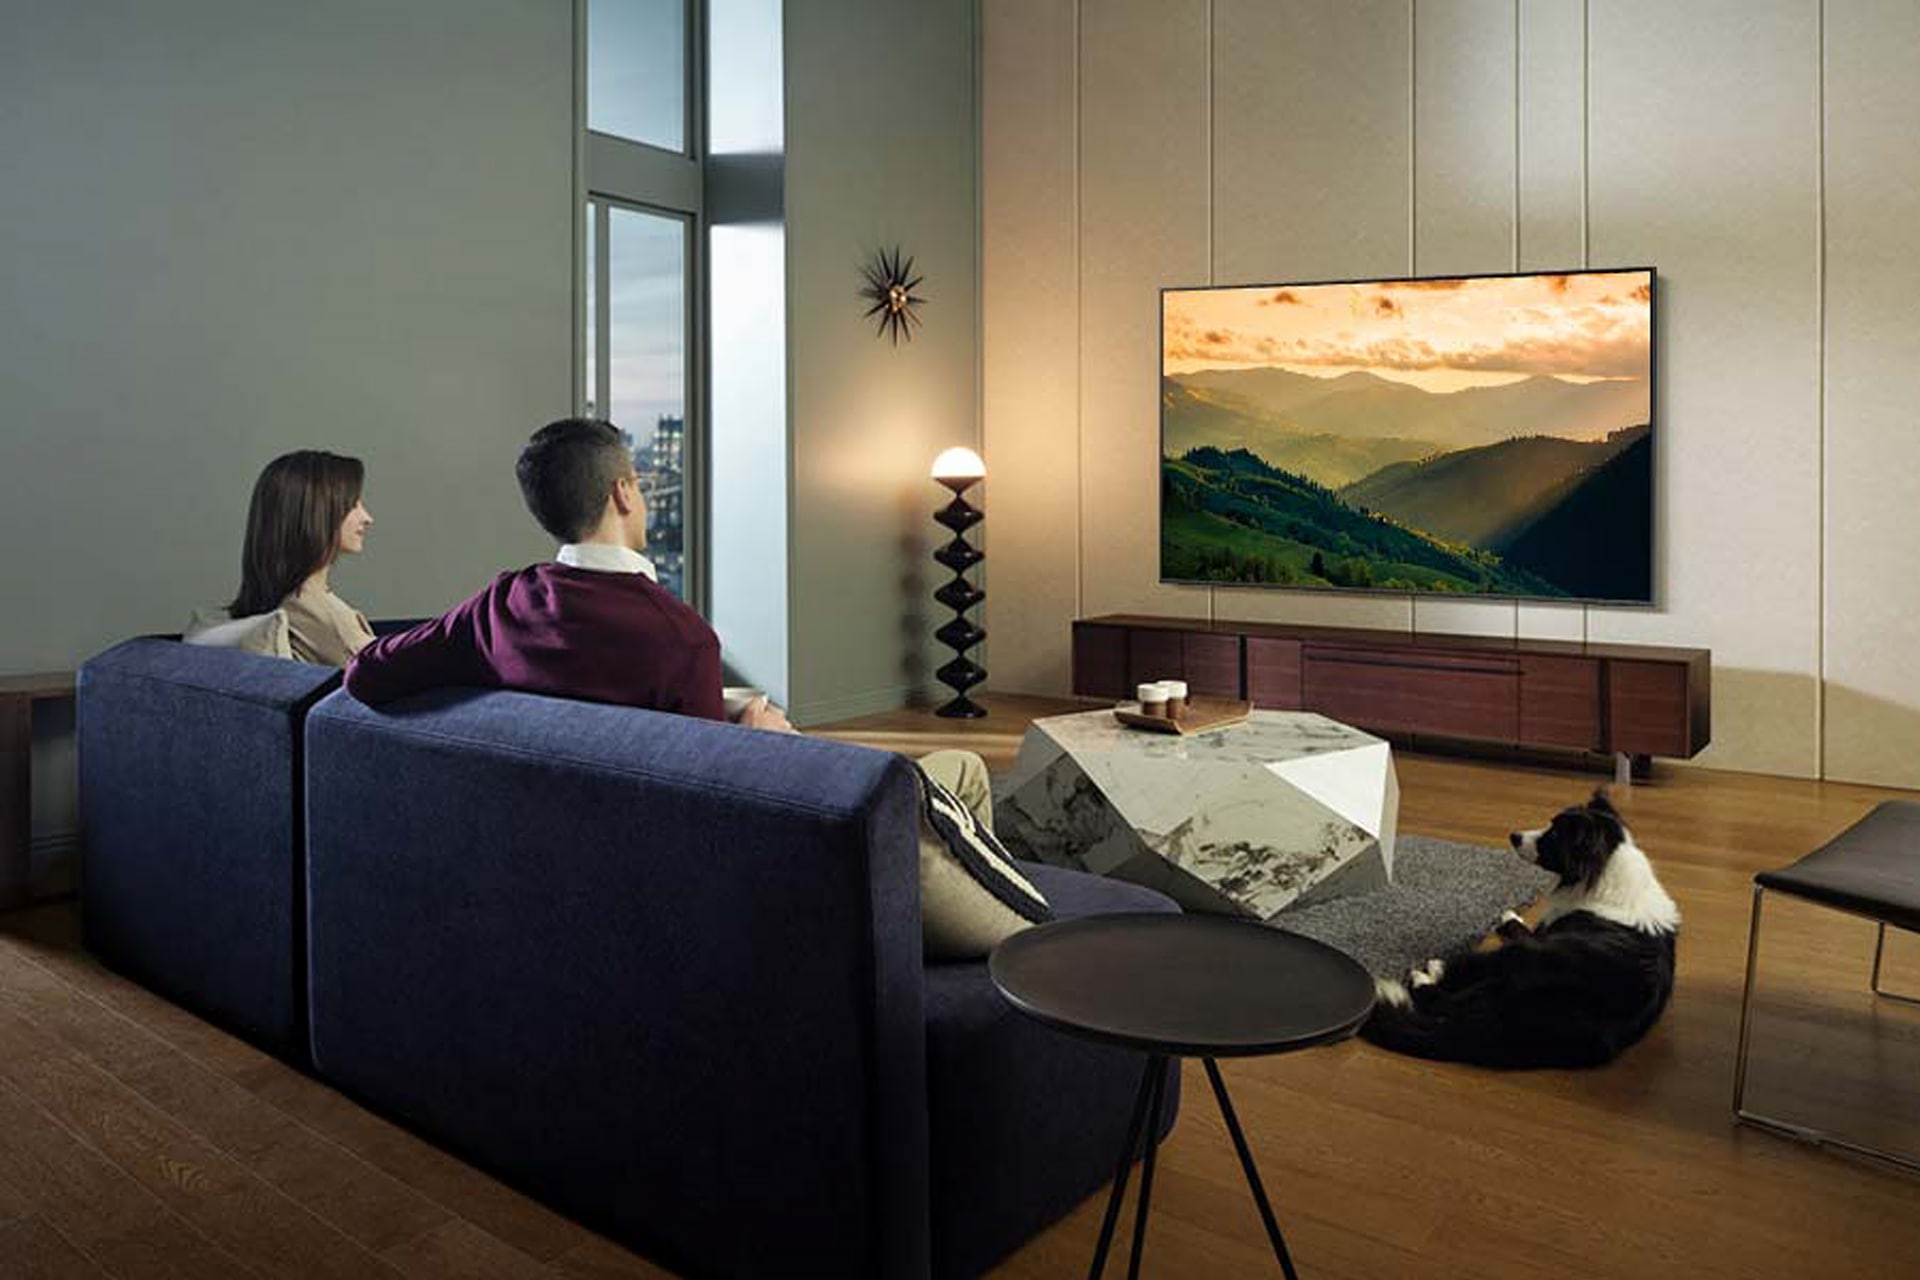 거실 벽면에 TV가 설치되어 있습니다. 화면에는 산이 보입니다. TV 앞 파란색 소파에는 남성과 여성이 앉아 있으며, 티 테이블 오른쪽에는 강아지가 엎드려 있는 라이프스타일 컷입니다.